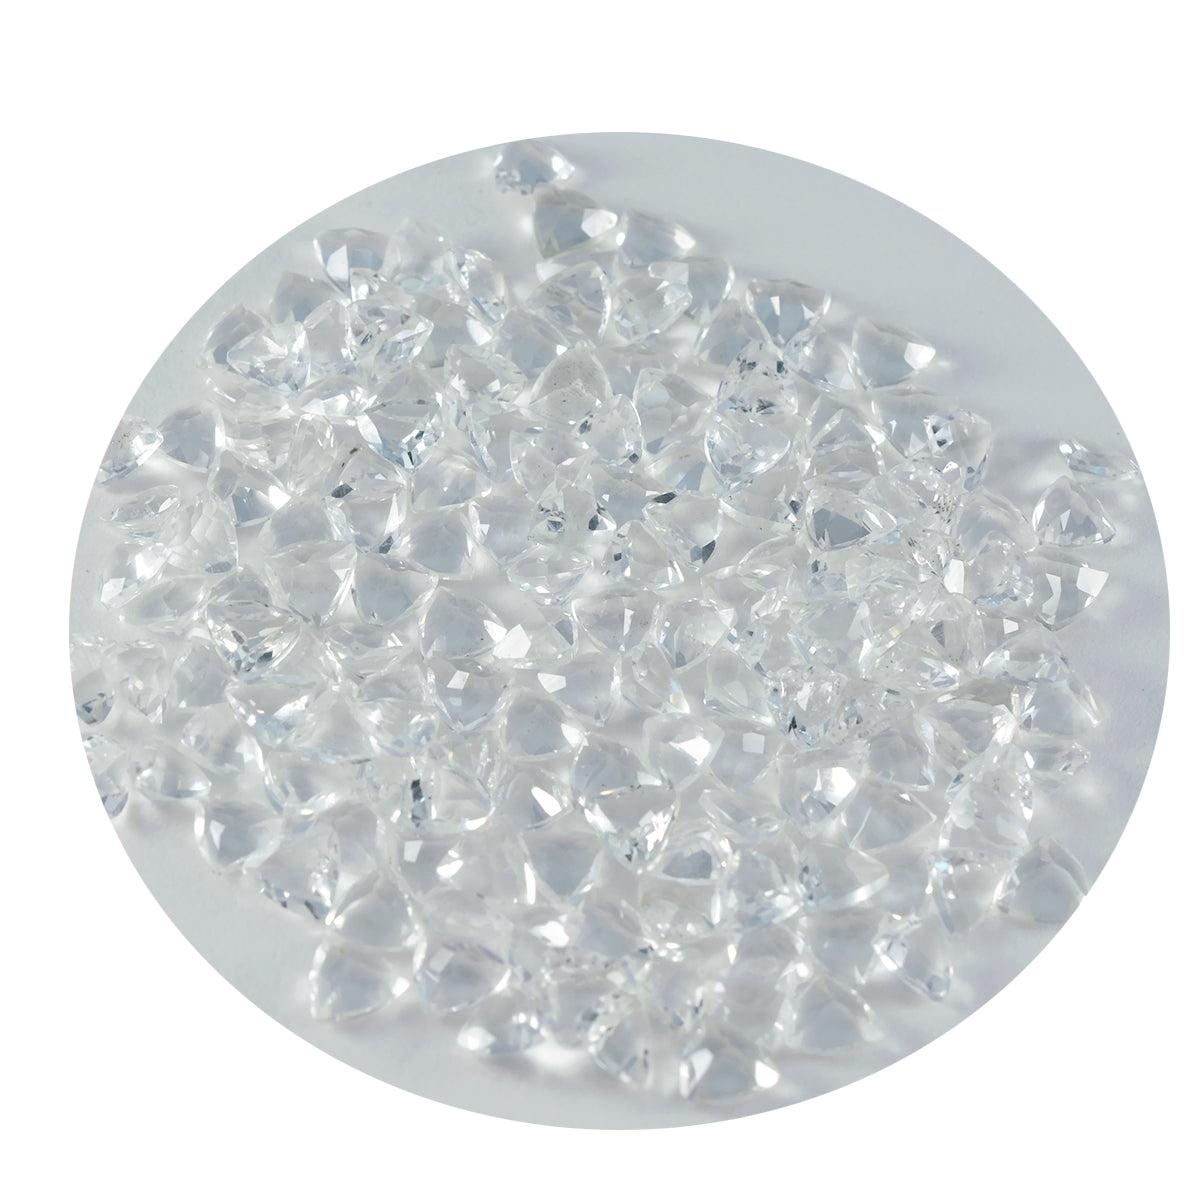 Riyogems 1PC wit kristalkwarts gefacetteerd 5x5 mm biljoen vorm prachtige kwaliteitsedelstenen